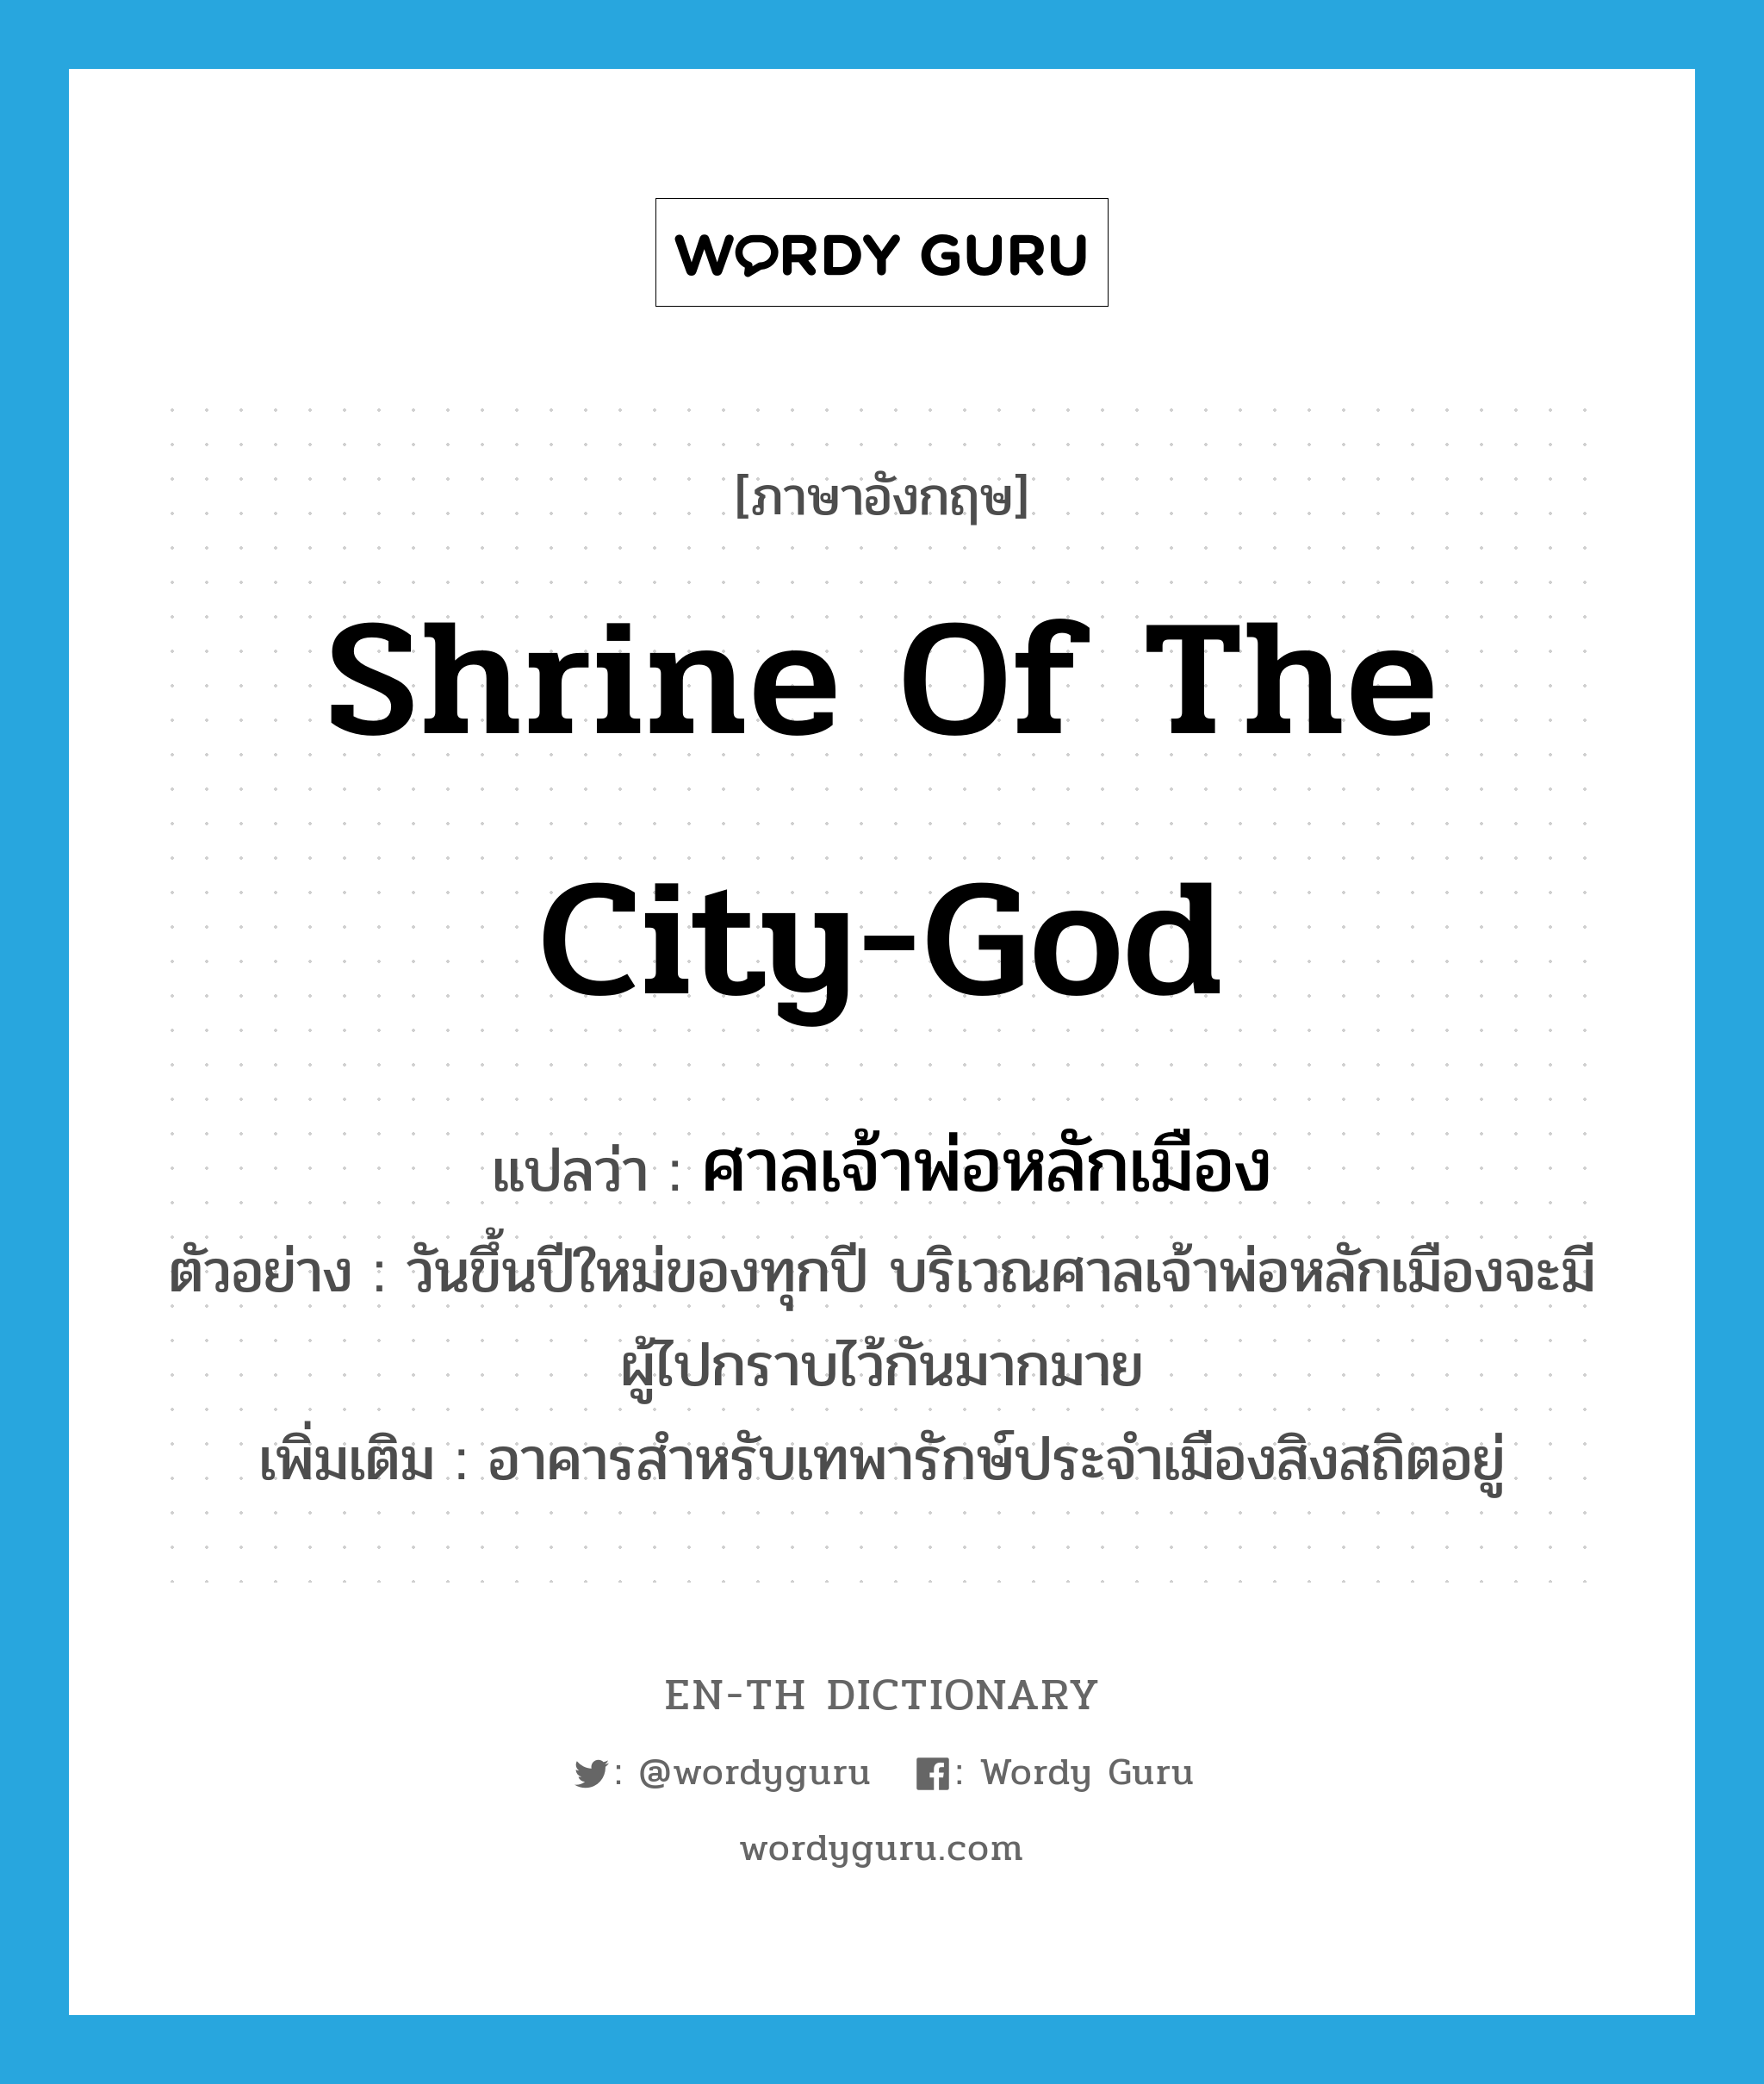 shrine of the city-god แปลว่า?, คำศัพท์ภาษาอังกฤษ shrine of the city-god แปลว่า ศาลเจ้าพ่อหลักเมือง ประเภท N ตัวอย่าง วันขึ้นปีใหม่ของทุกปี บริเวณศาลเจ้าพ่อหลักเมืองจะมีผู้ไปกราบไว้กันมากมาย เพิ่มเติม อาคารสำหรับเทพารักษ์ประจำเมืองสิงสถิตอยู่ หมวด N